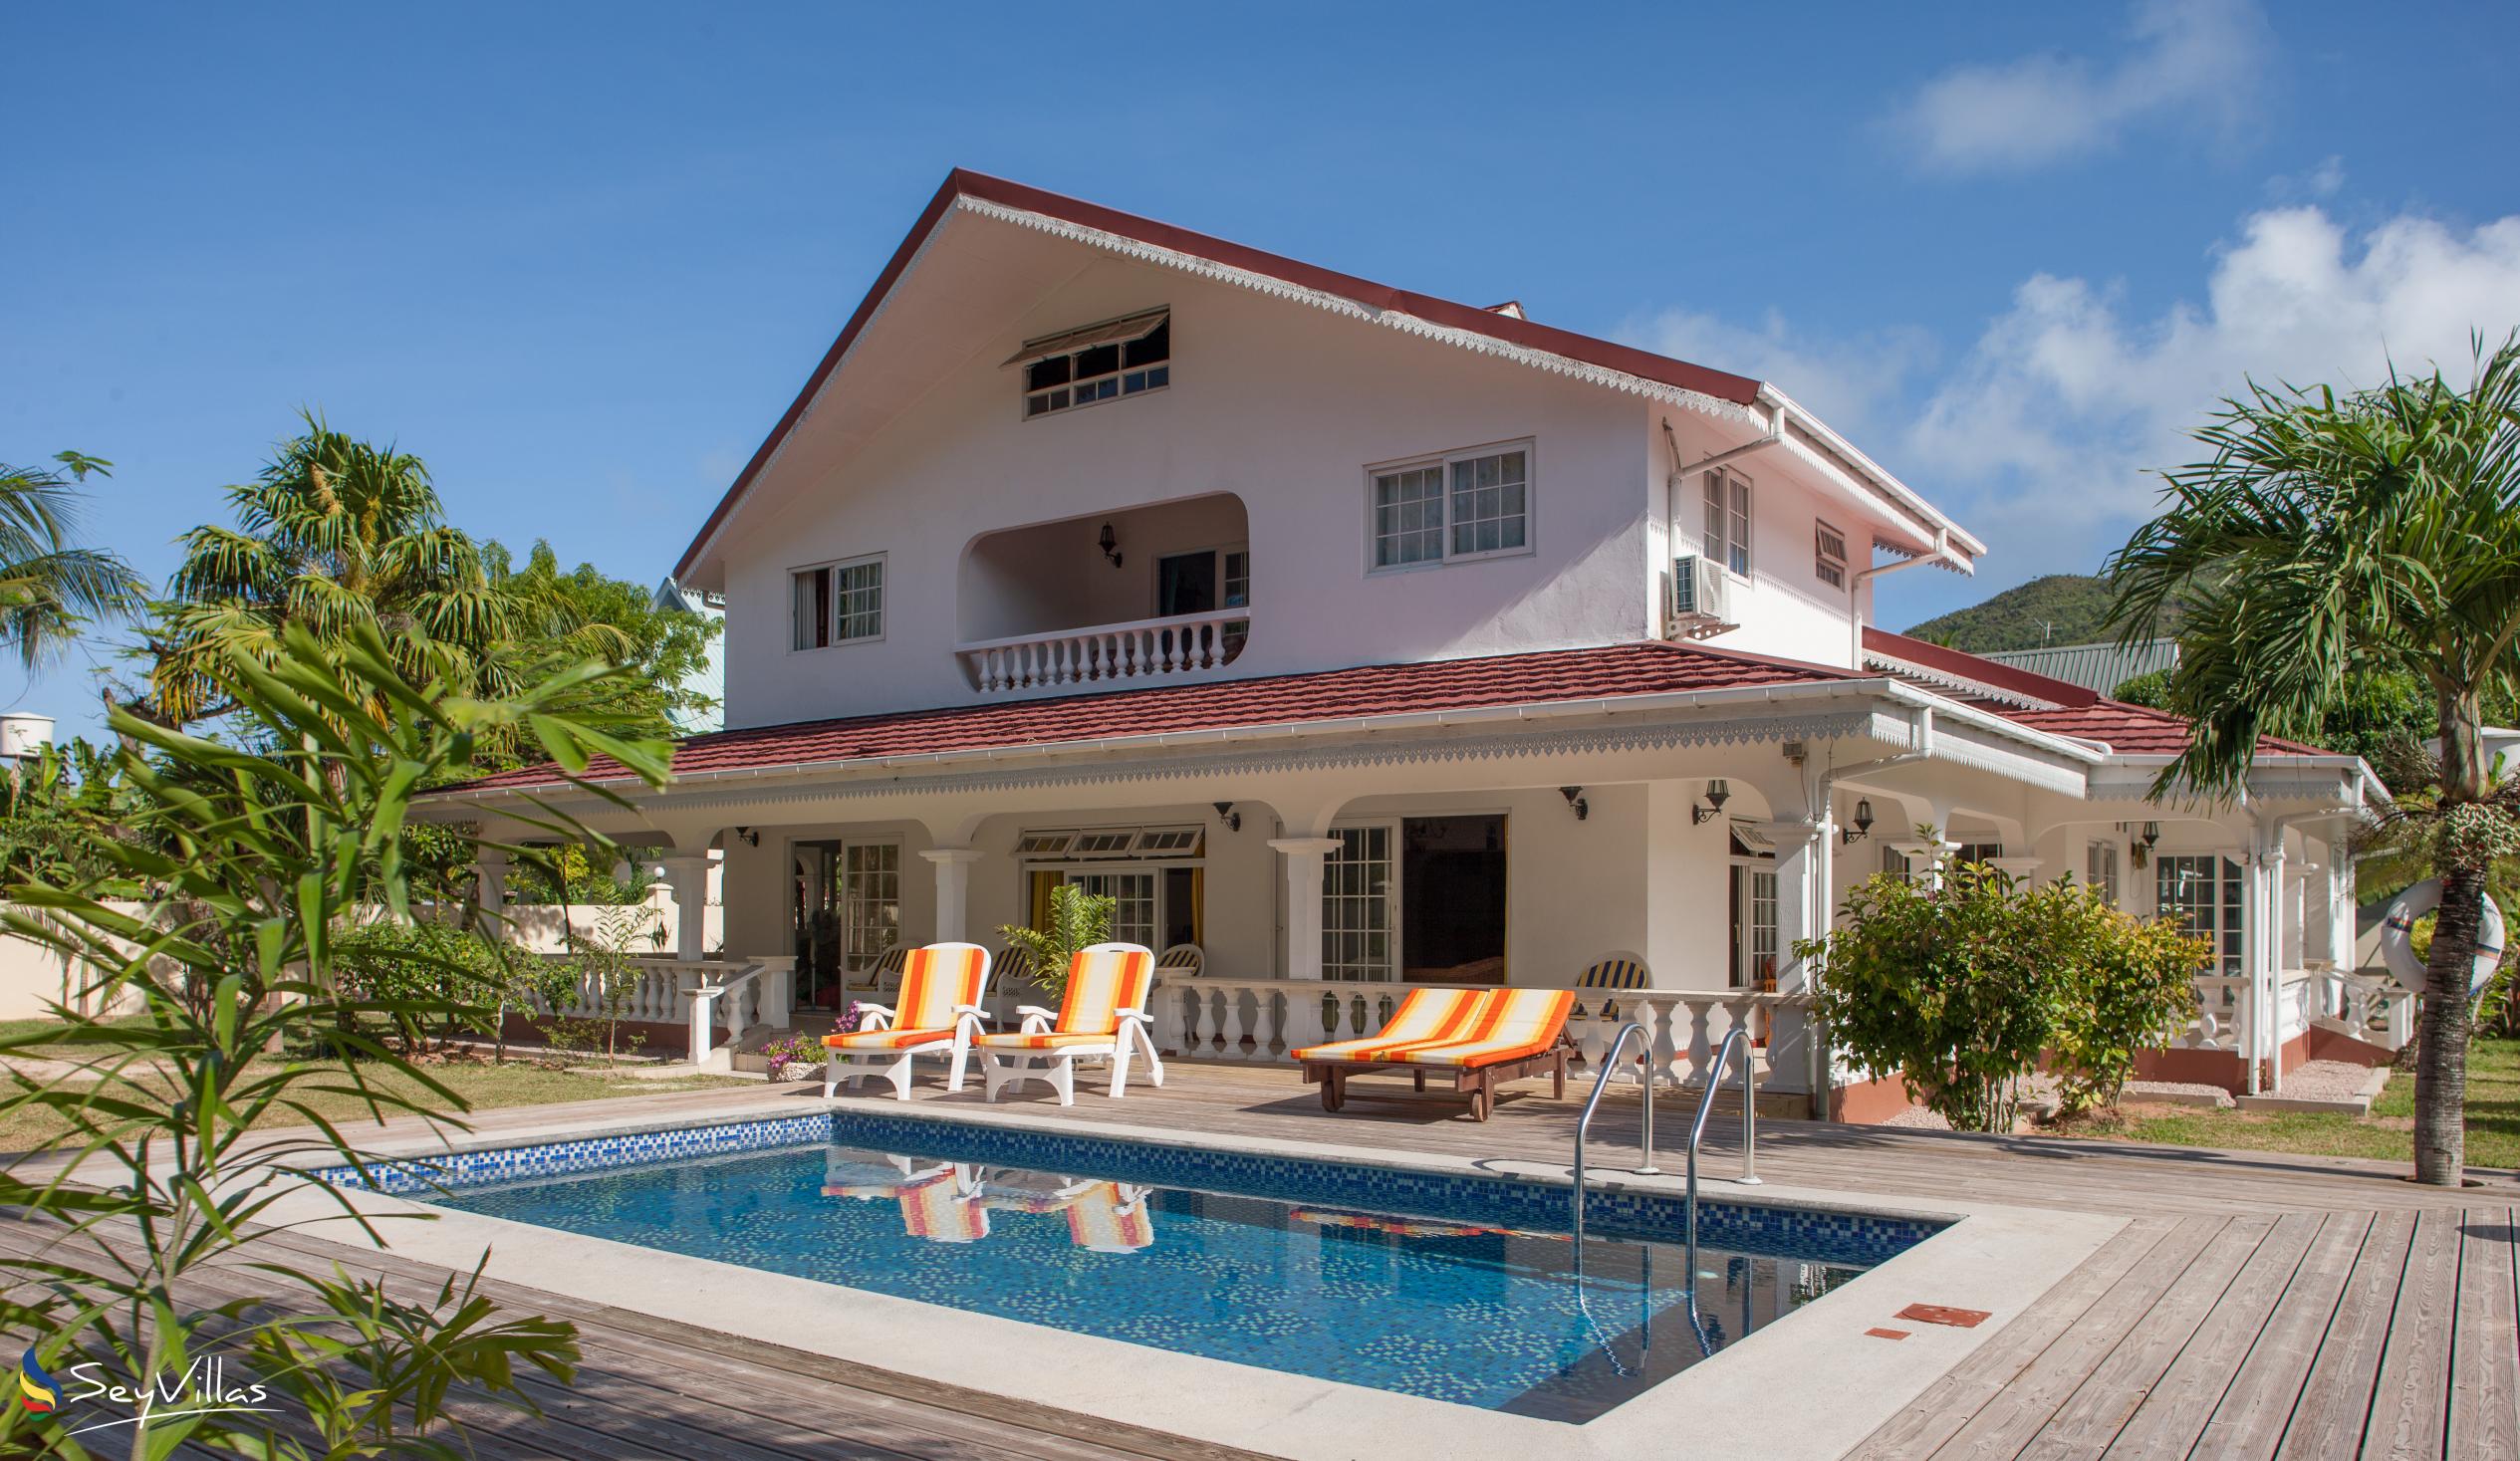 Foto 2: Villa Confort - Esterno - Praslin (Seychelles)